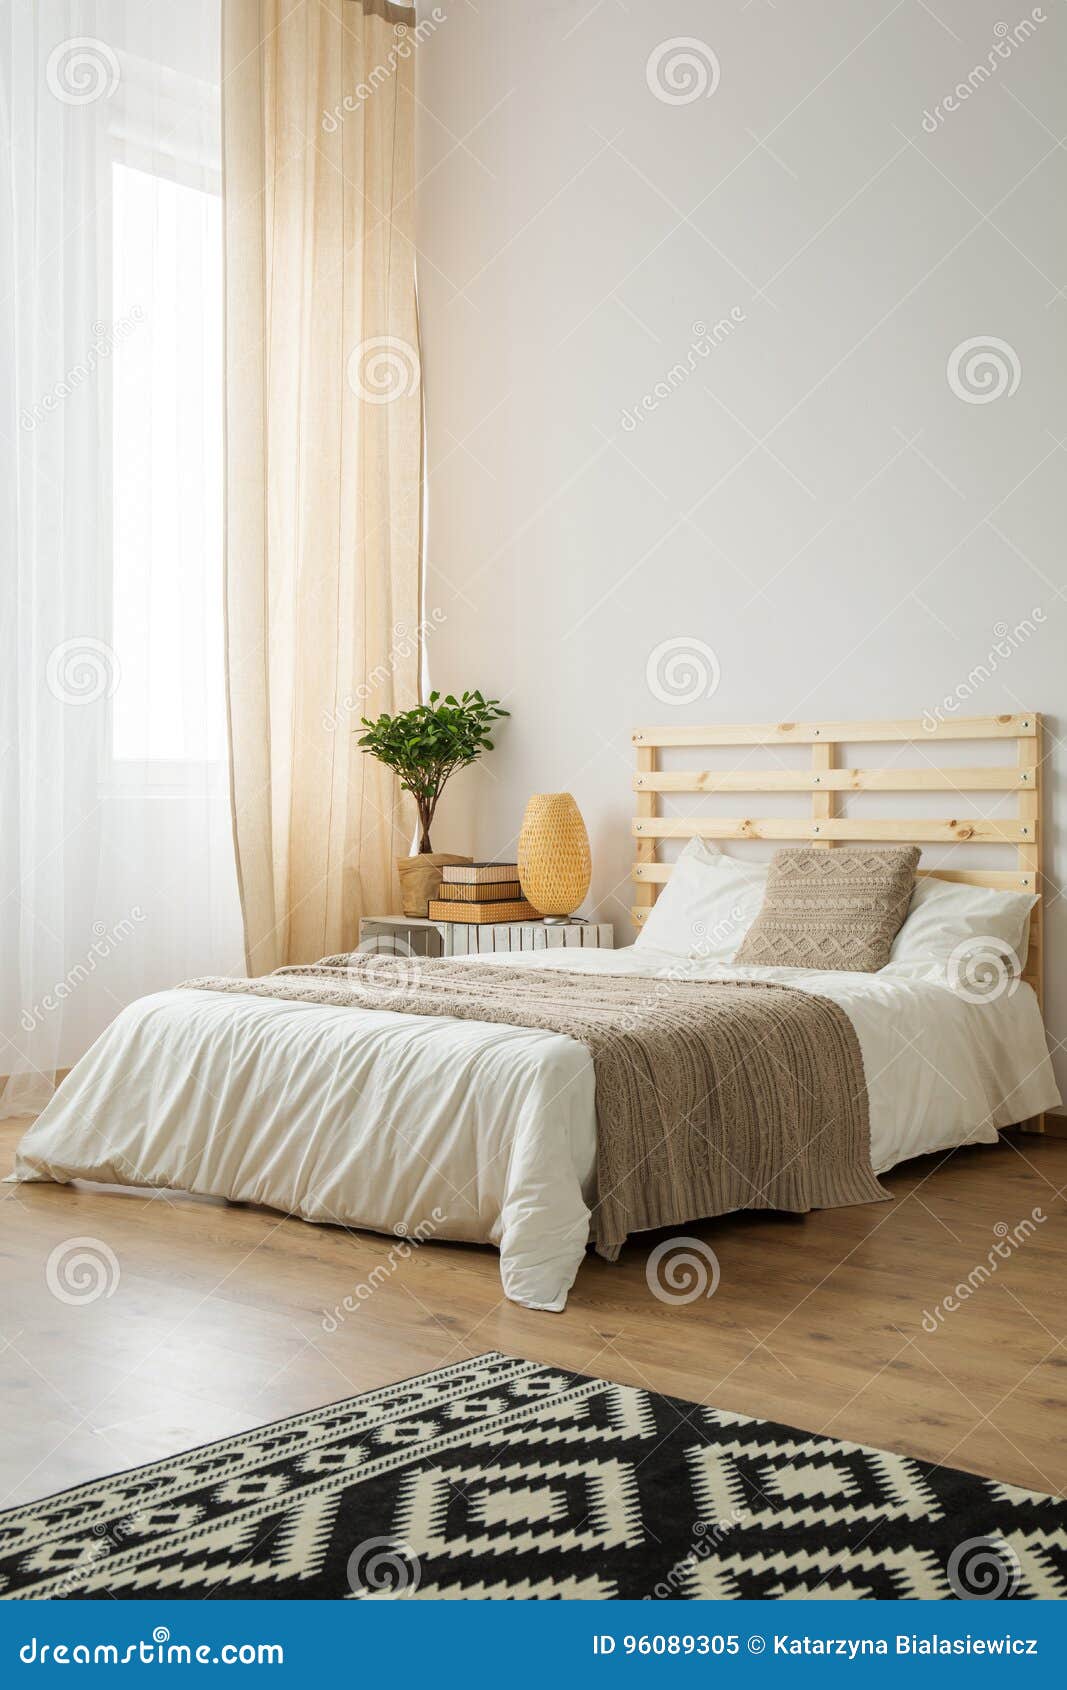 Dormitorio Minimalista Beige Y Blanco Imagen De Archivo Imagen De Estilo Muebles 96089305